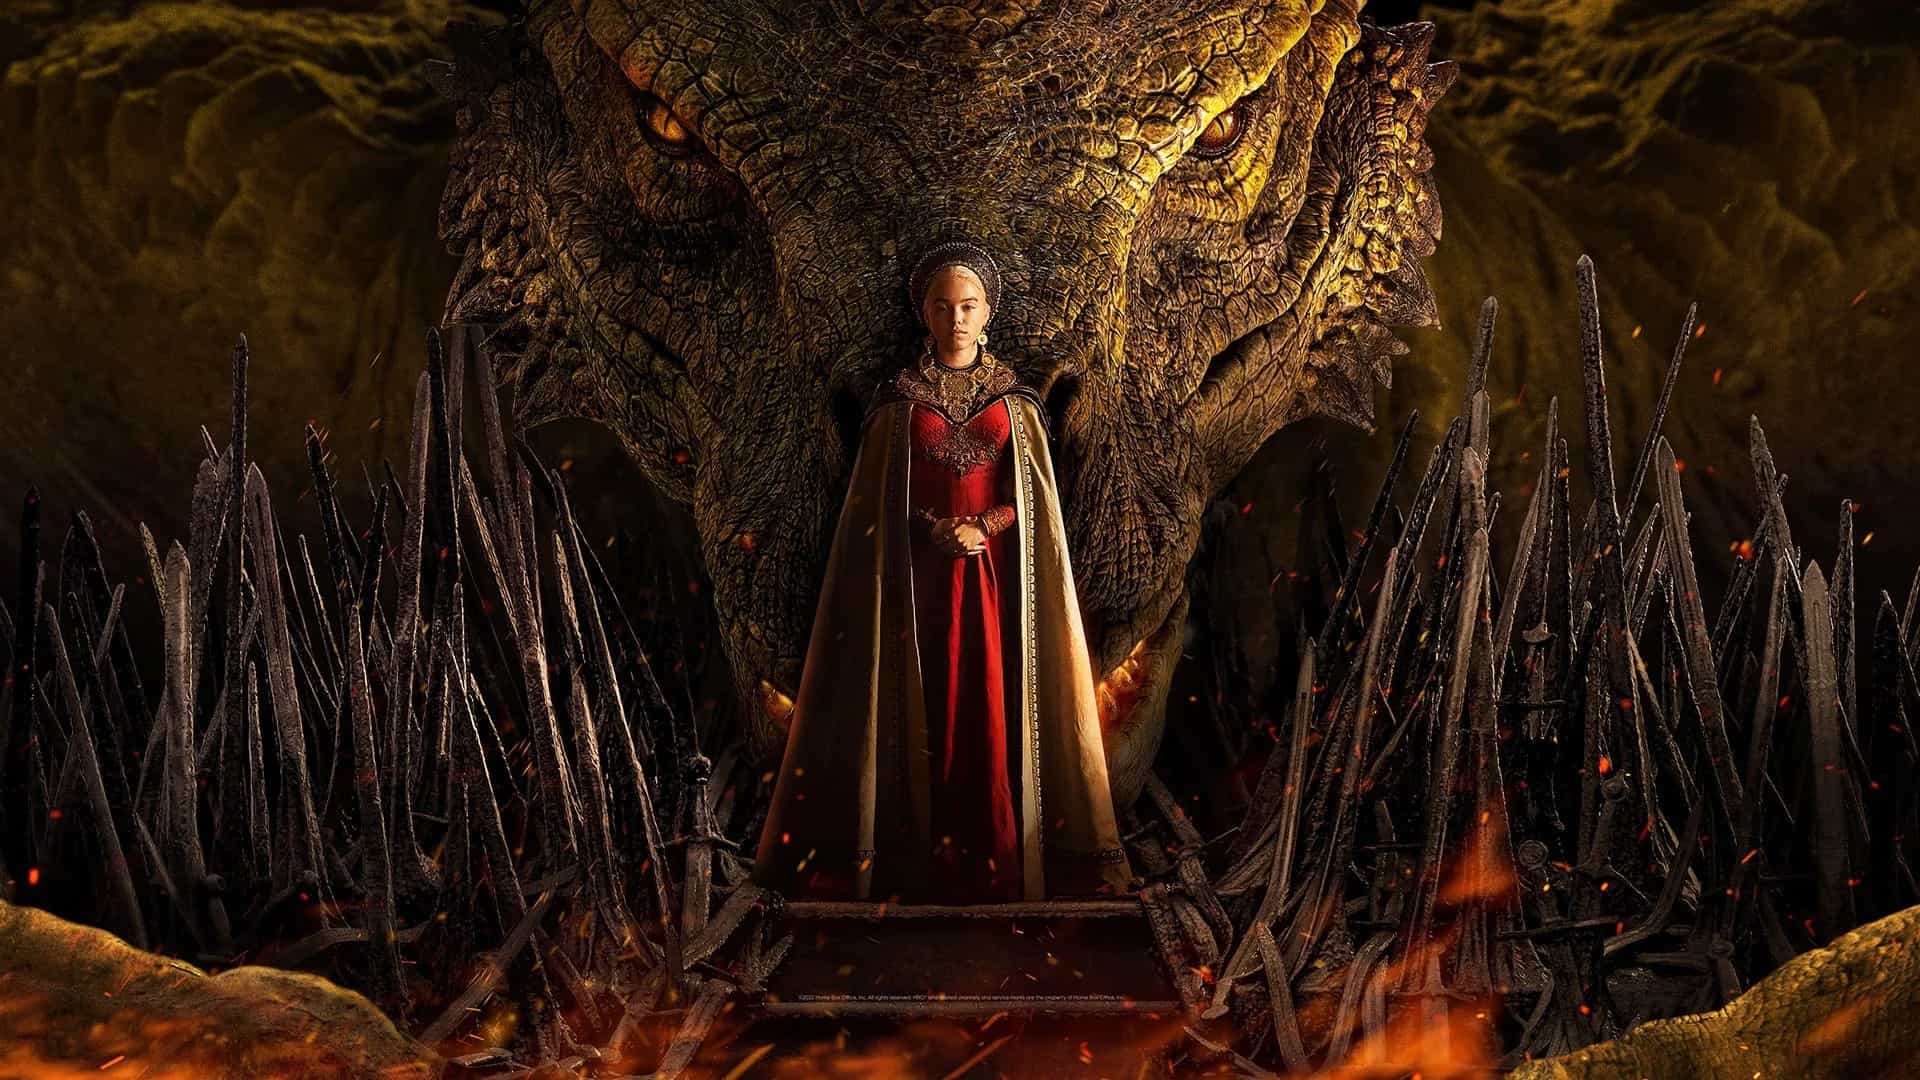 Fotograma del trailer promocional de la próxima serie de HBO Max, La Casa del Dragón, precuela de la aclamada Juego de Tronos